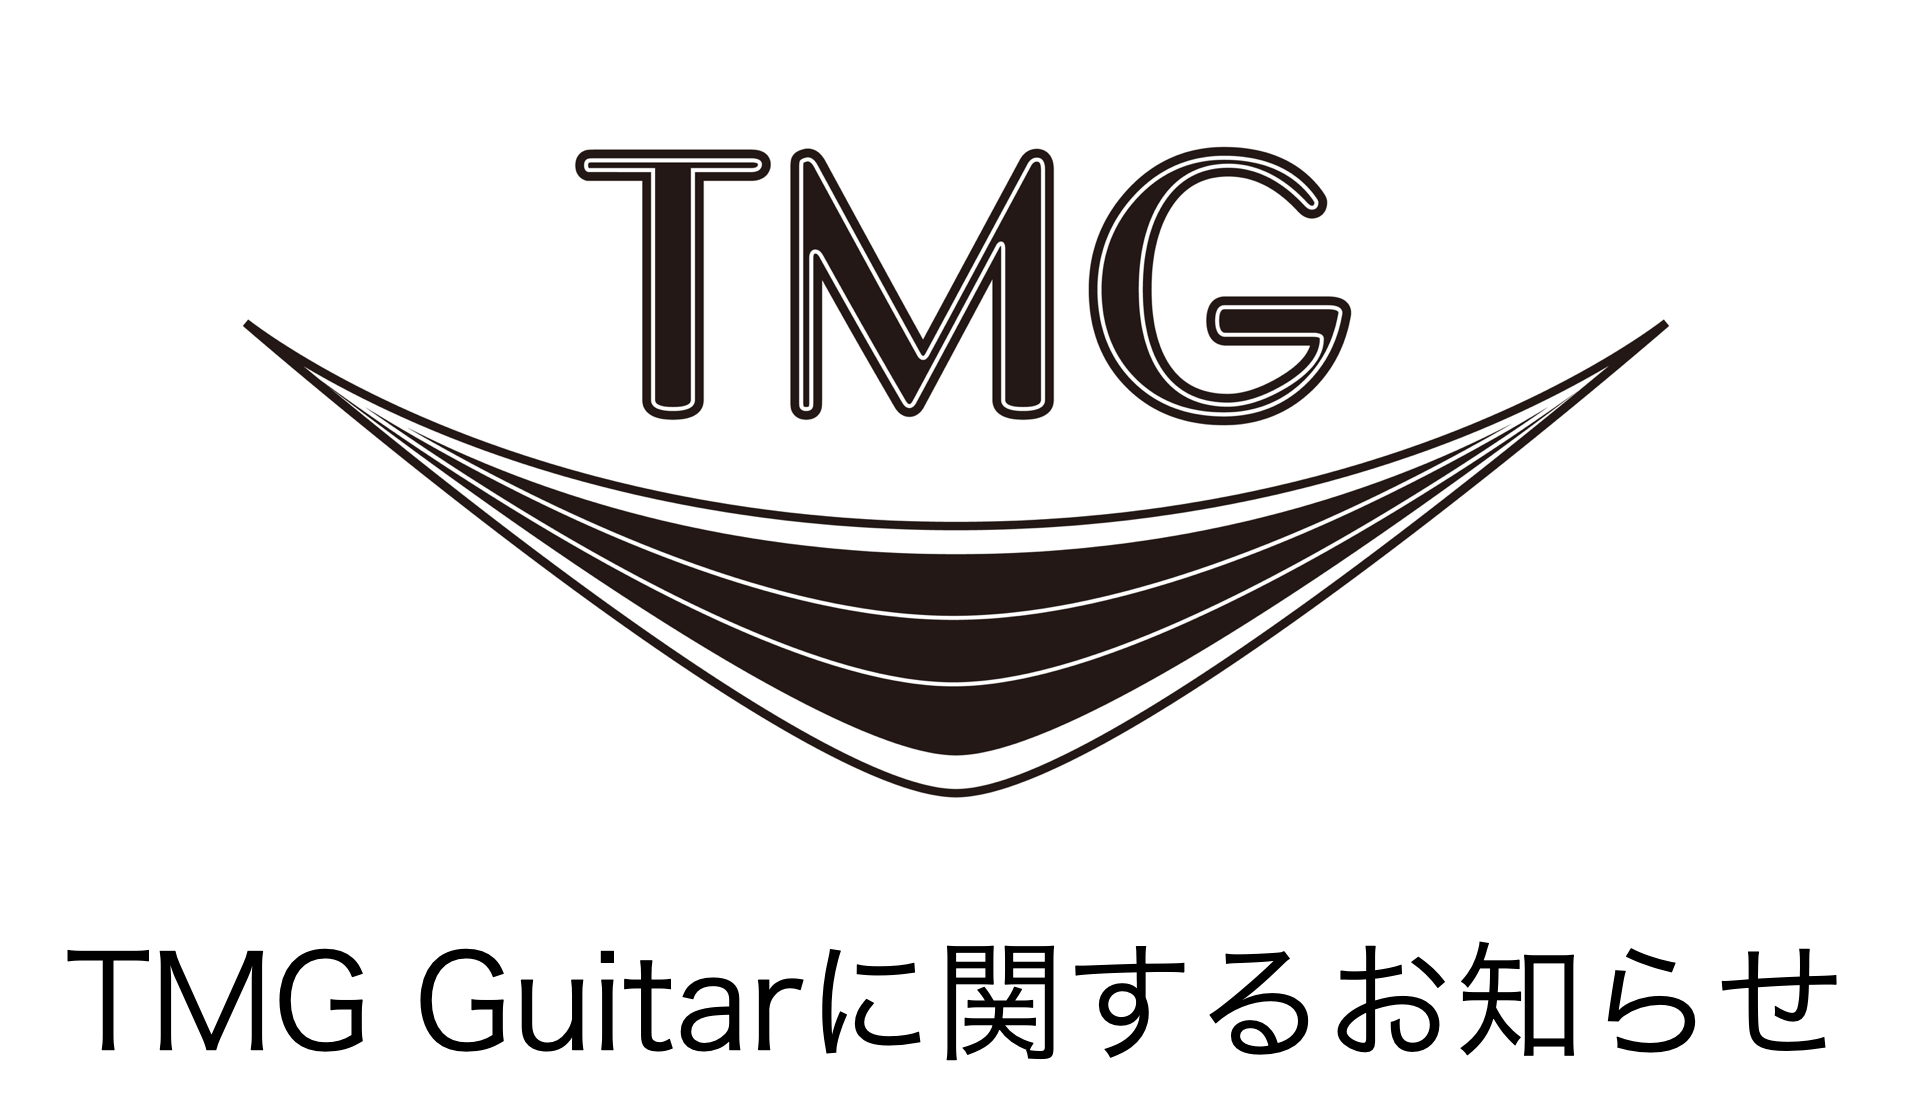 TMG Guitarに関するお知らせ - TC楽器 - TCGAKKI